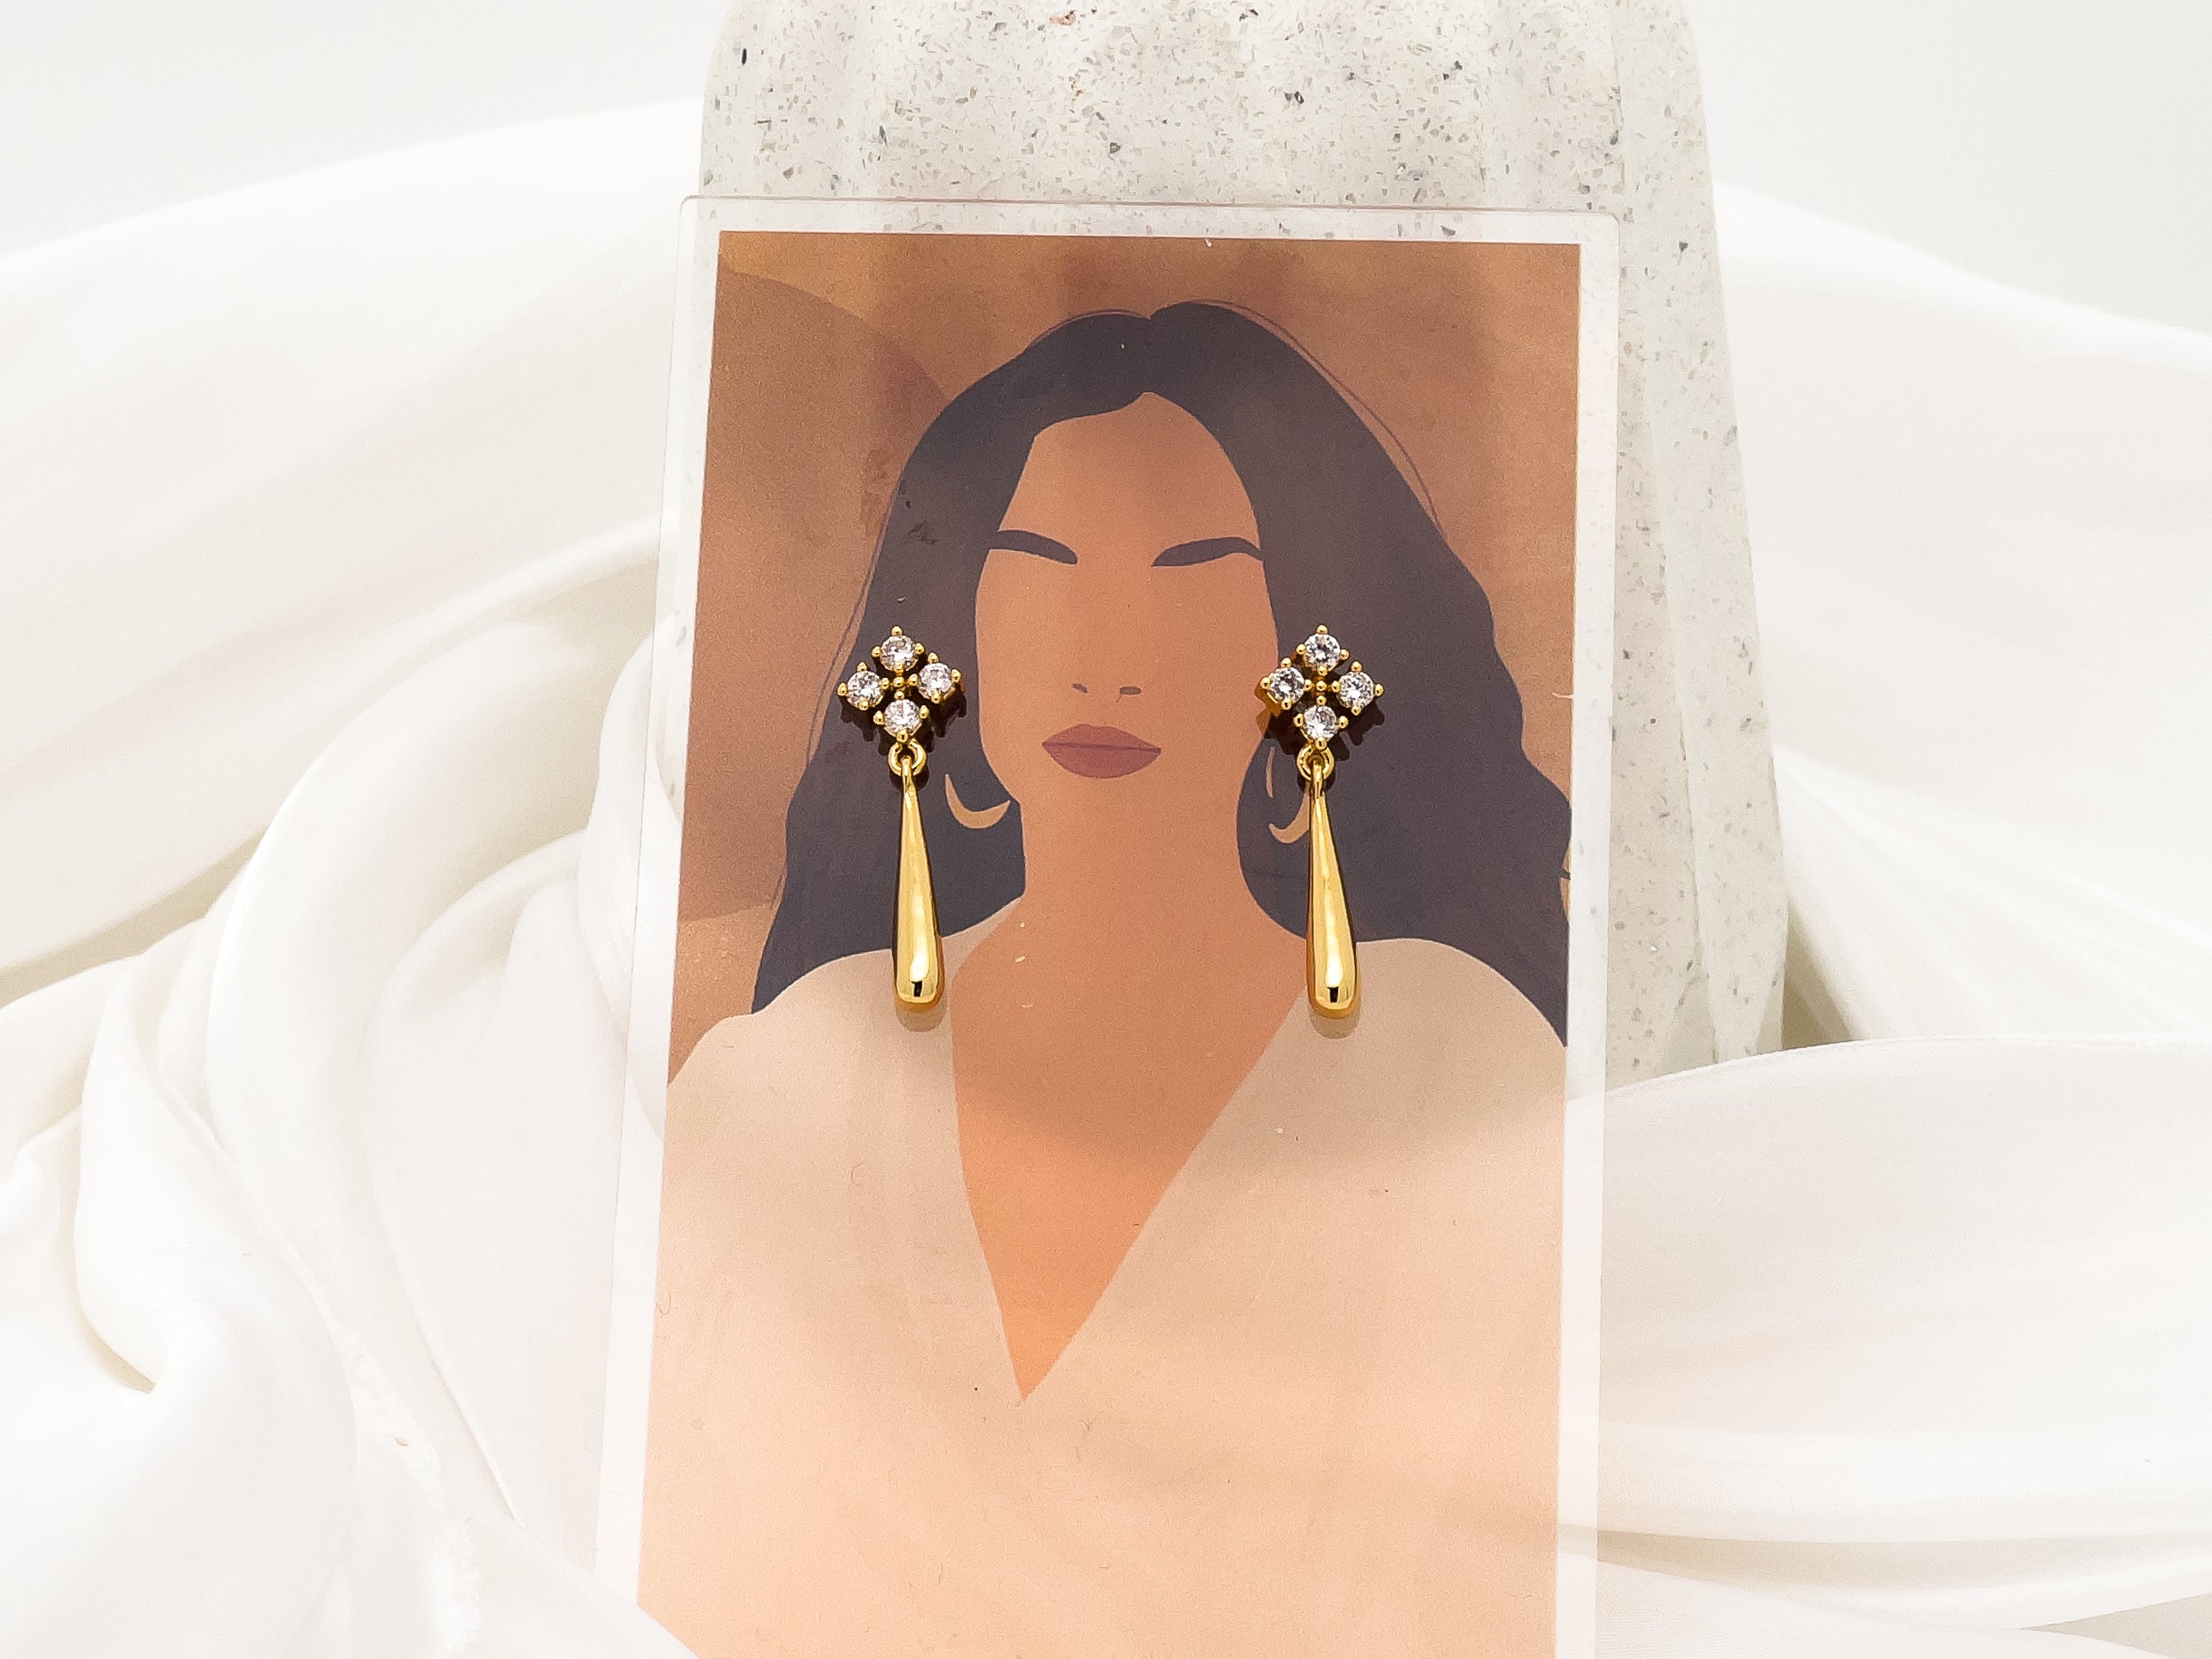 Lois Crystal Tear Drop Tassel Earrings in Gold - Fashion Jewelry  | chic chic bon